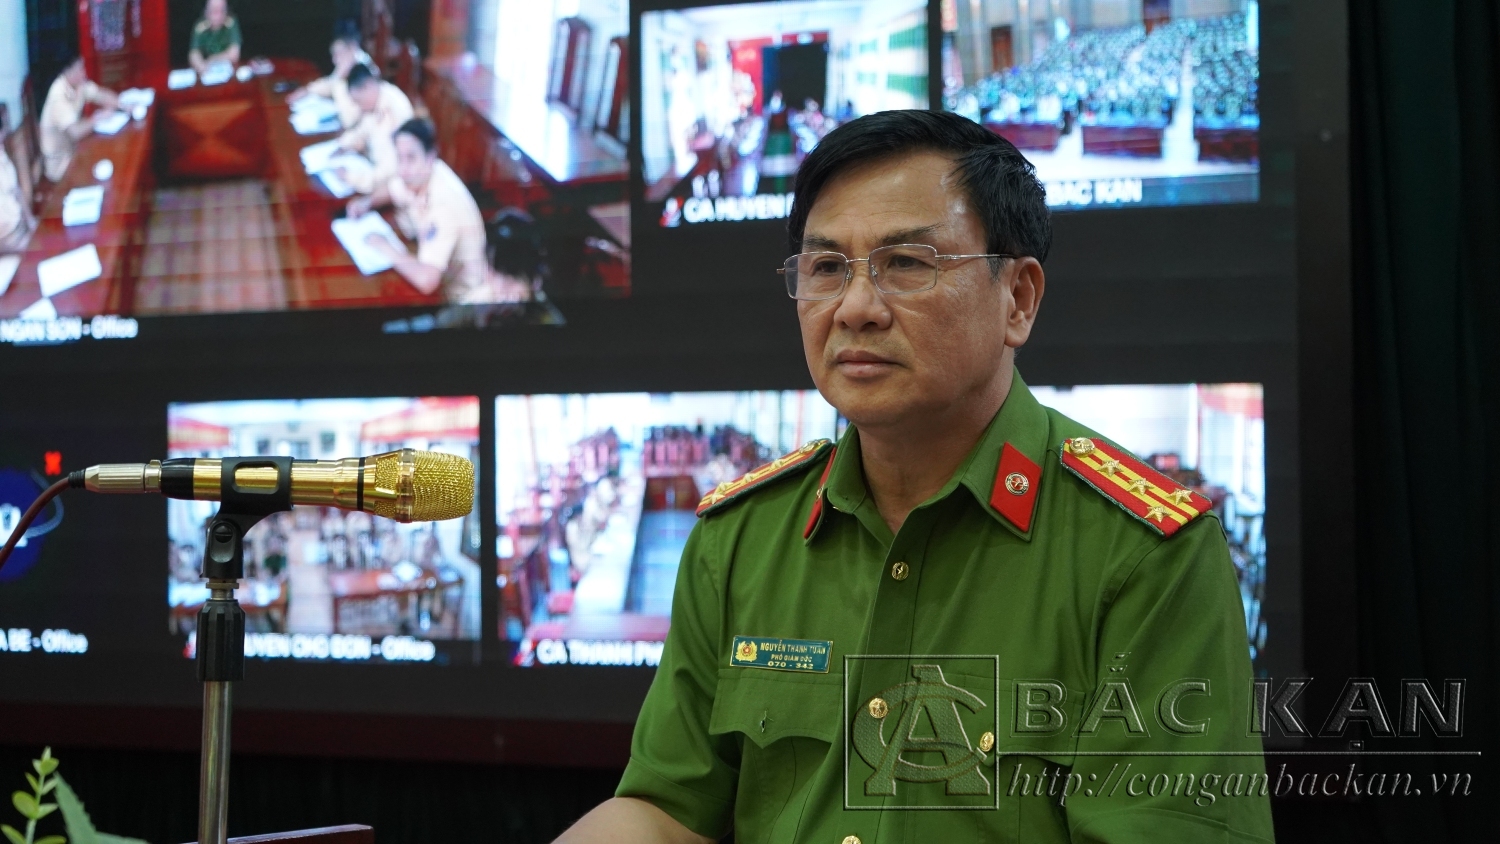 Đại tá Nguyễn Thanh Tuân, Phó Giám đốc Công an tỉnh phát biểu và chủ trì phần thảo luận.